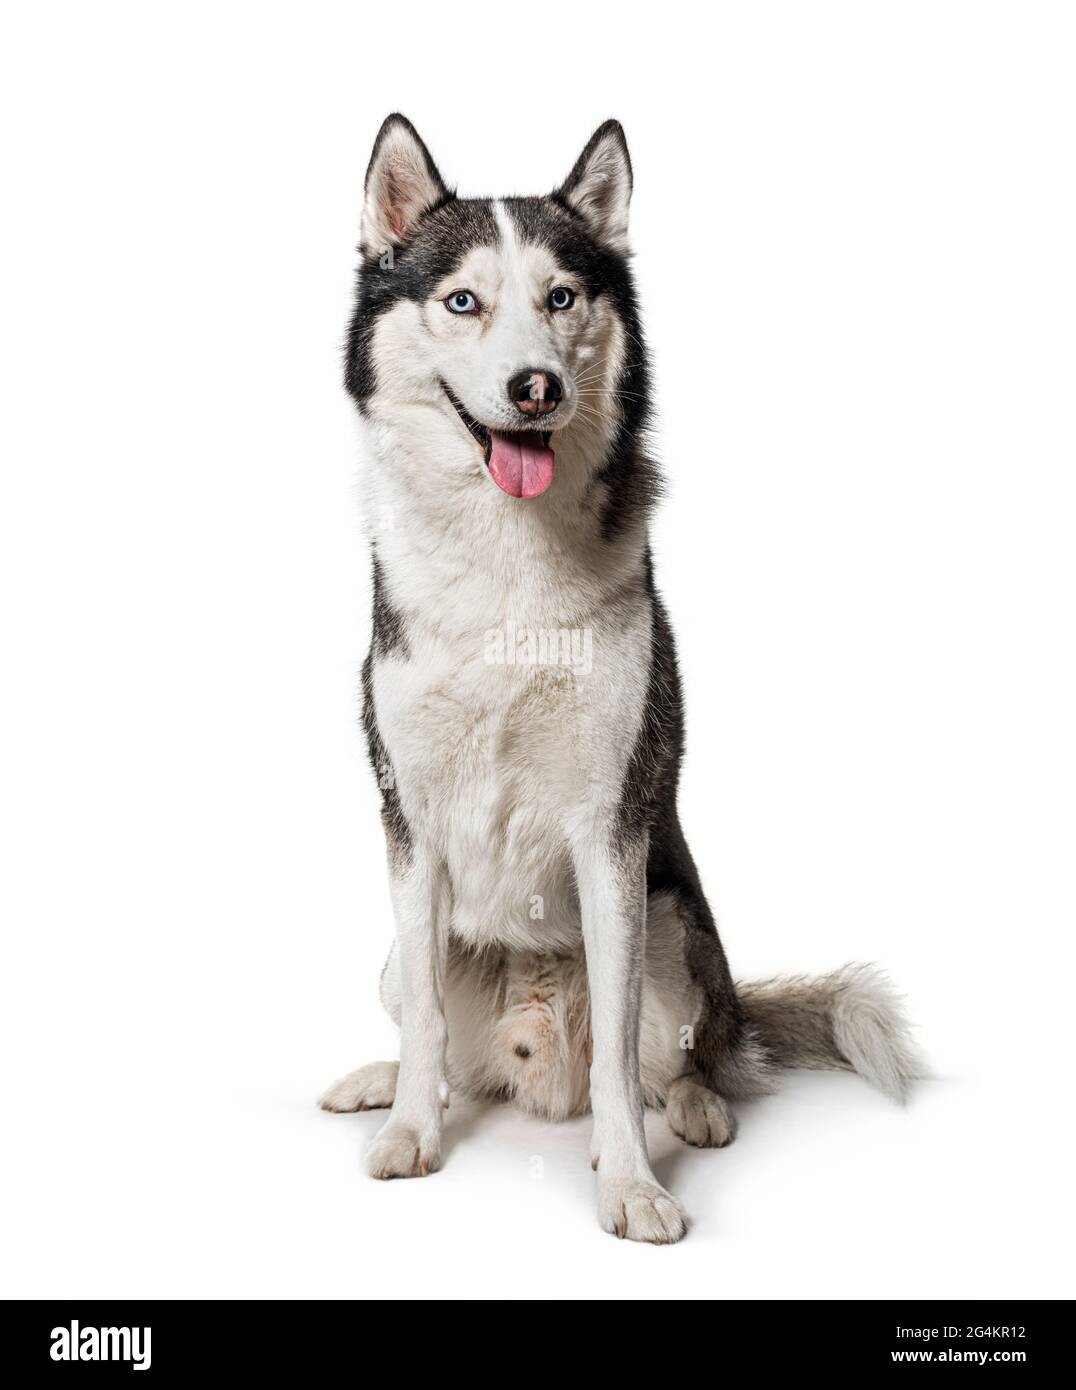 Panting Siberian Husky dog sitting on white Stock Photo